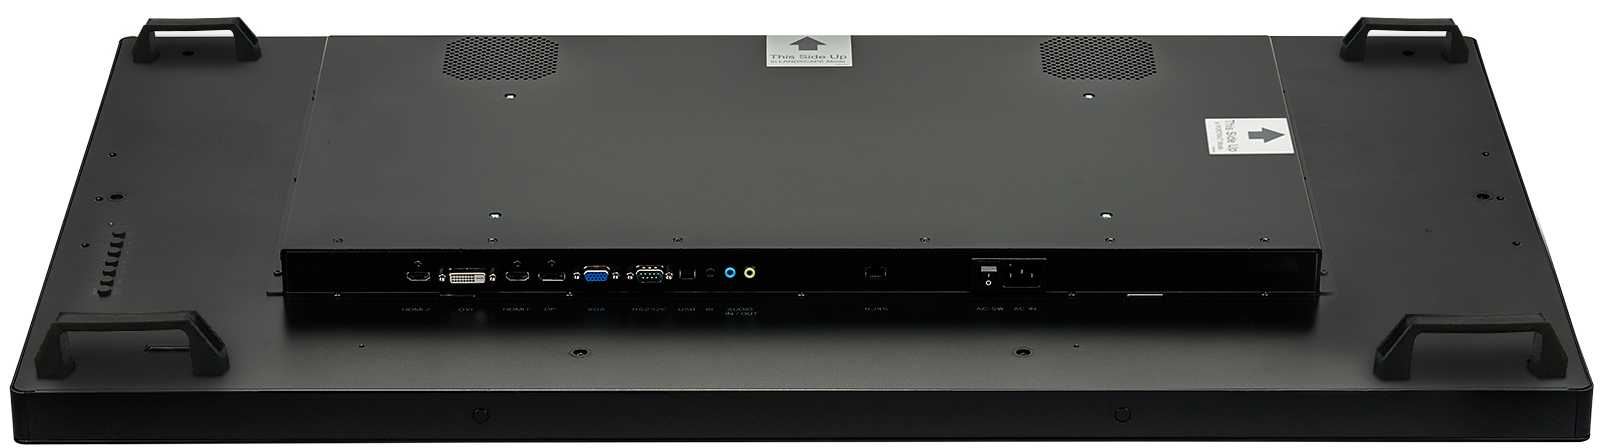 49" iiyama TF4939UHSC-B1AG: IPS, 4K, capacitive, 15P, 500cd/ m2, VGA, HDMI, DP, 24/ 7, IP54, černý 